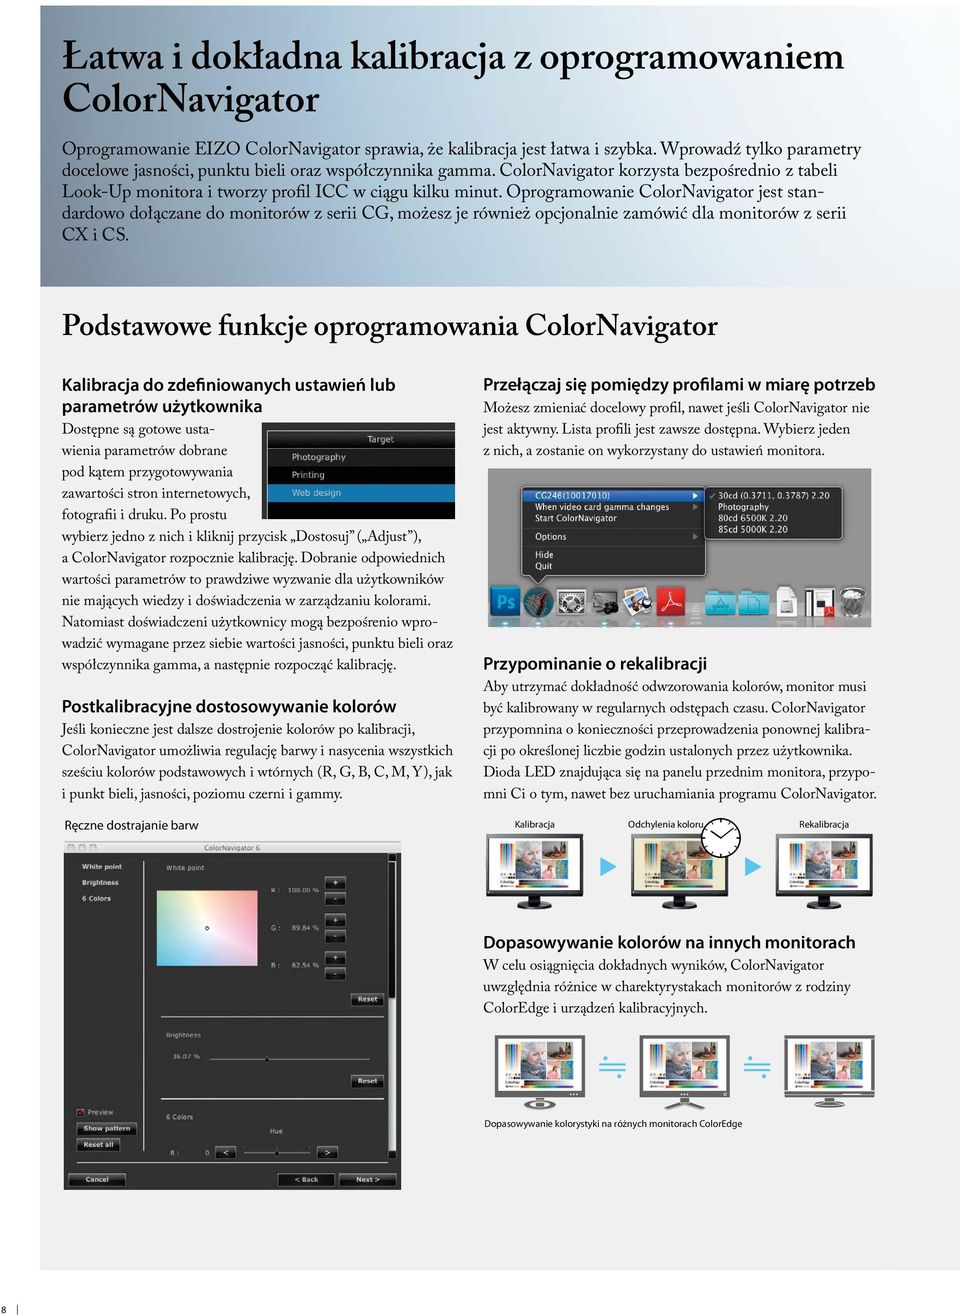 Oprogramowanie ColorNavigator jest standardowo dołączane do monitorów z serii CG, możesz je również opcjonalnie zamówić dla monitorów z serii CX i CS.